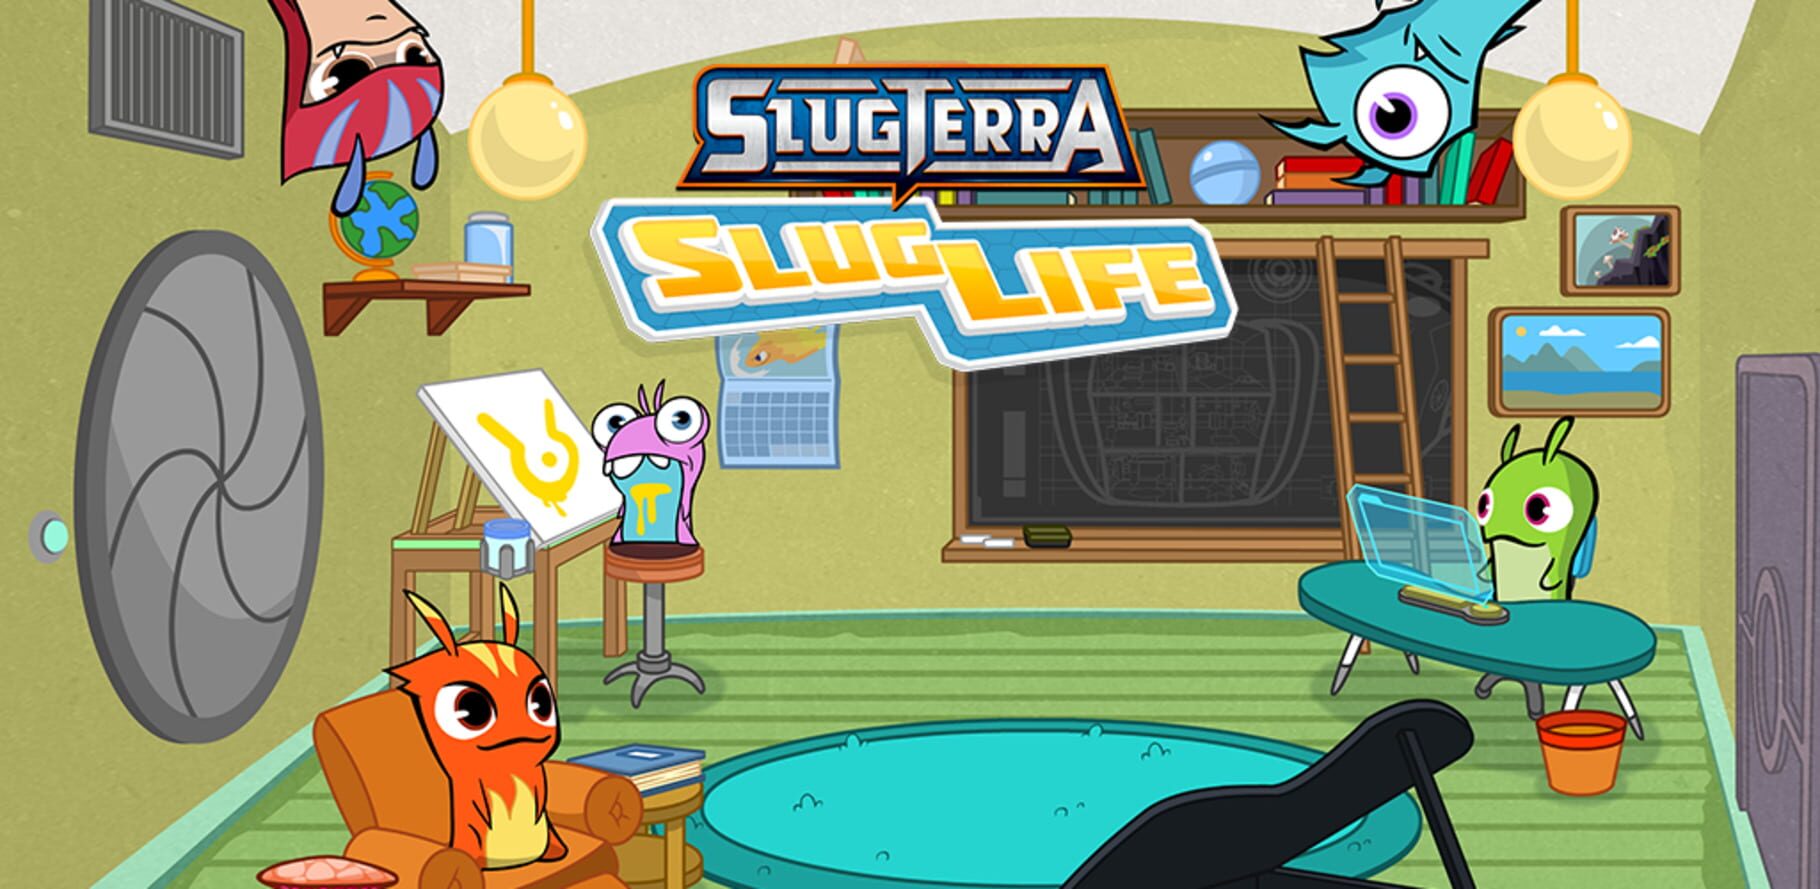 Slugterra: Slug Life Image